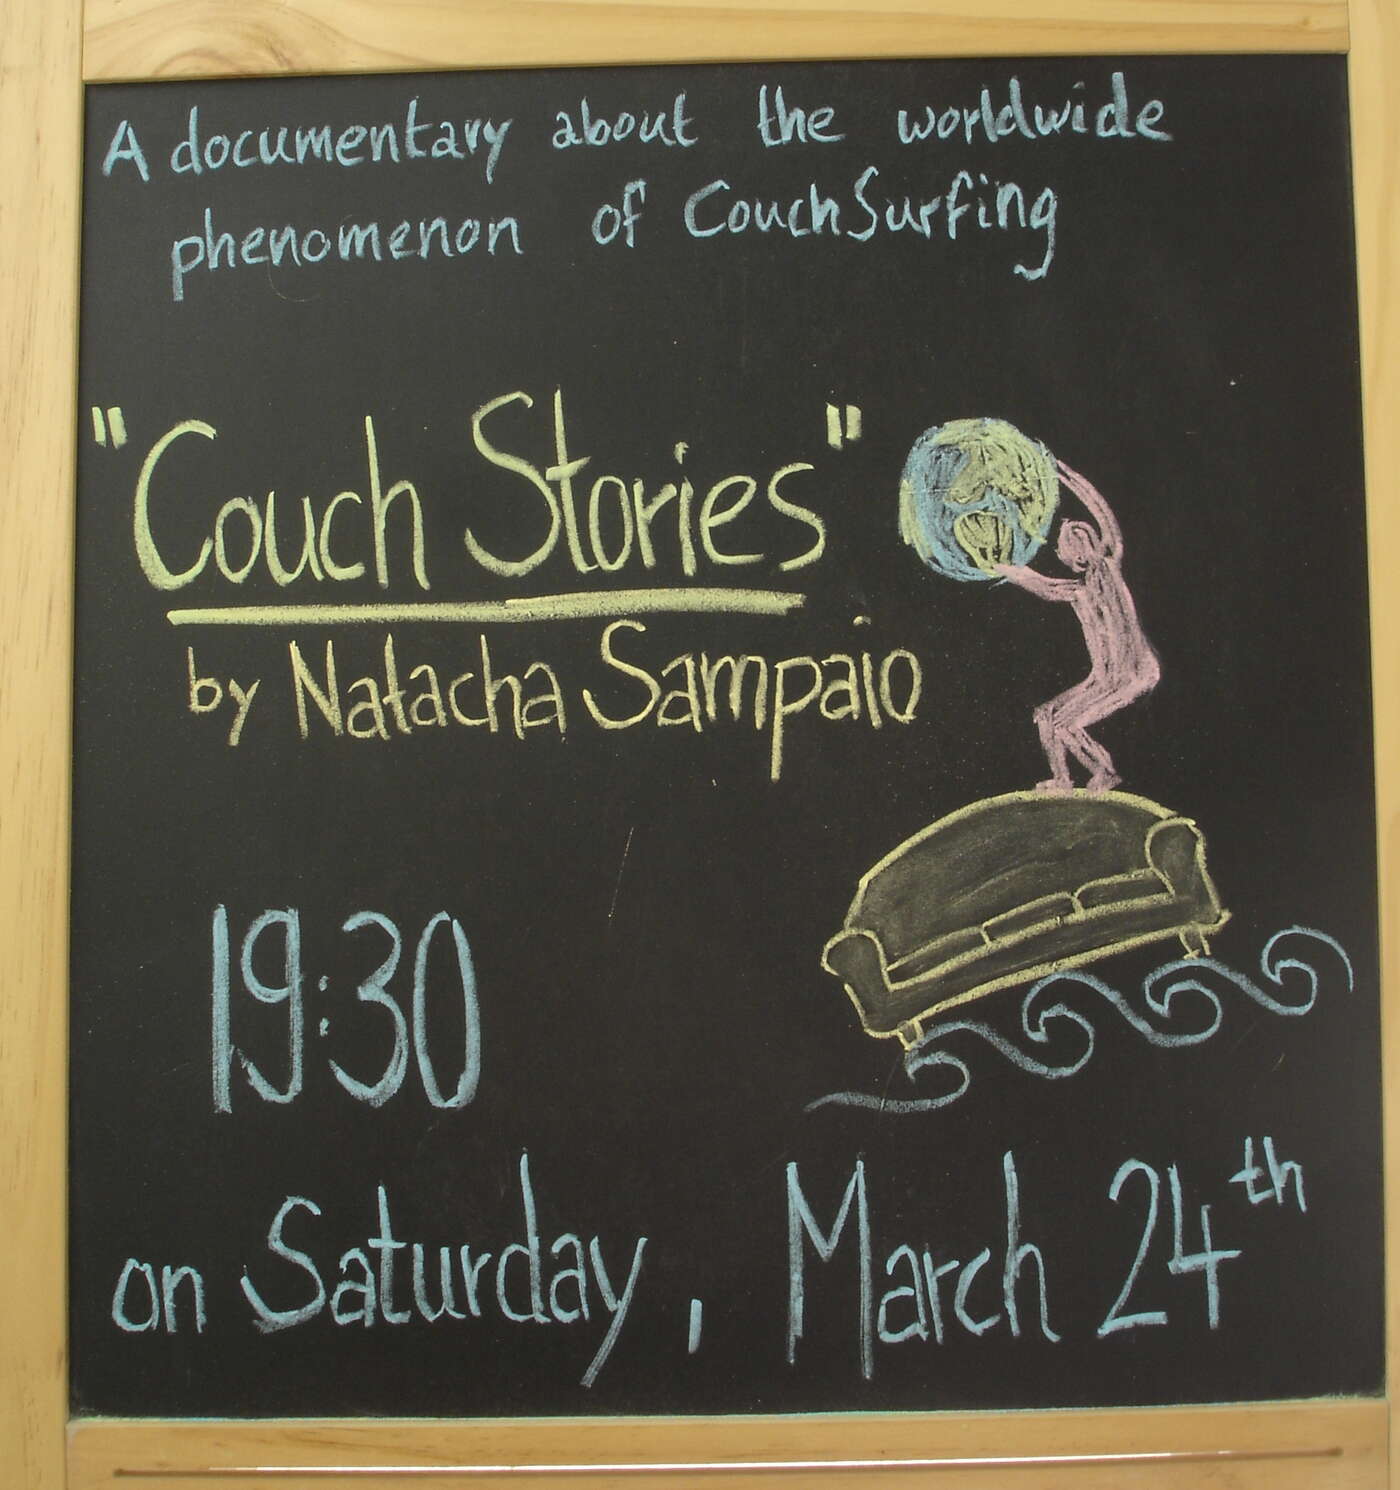 Natachas Dokumentarfilm über Couchsurfing wurde bei uns im Zentrum gezeigt